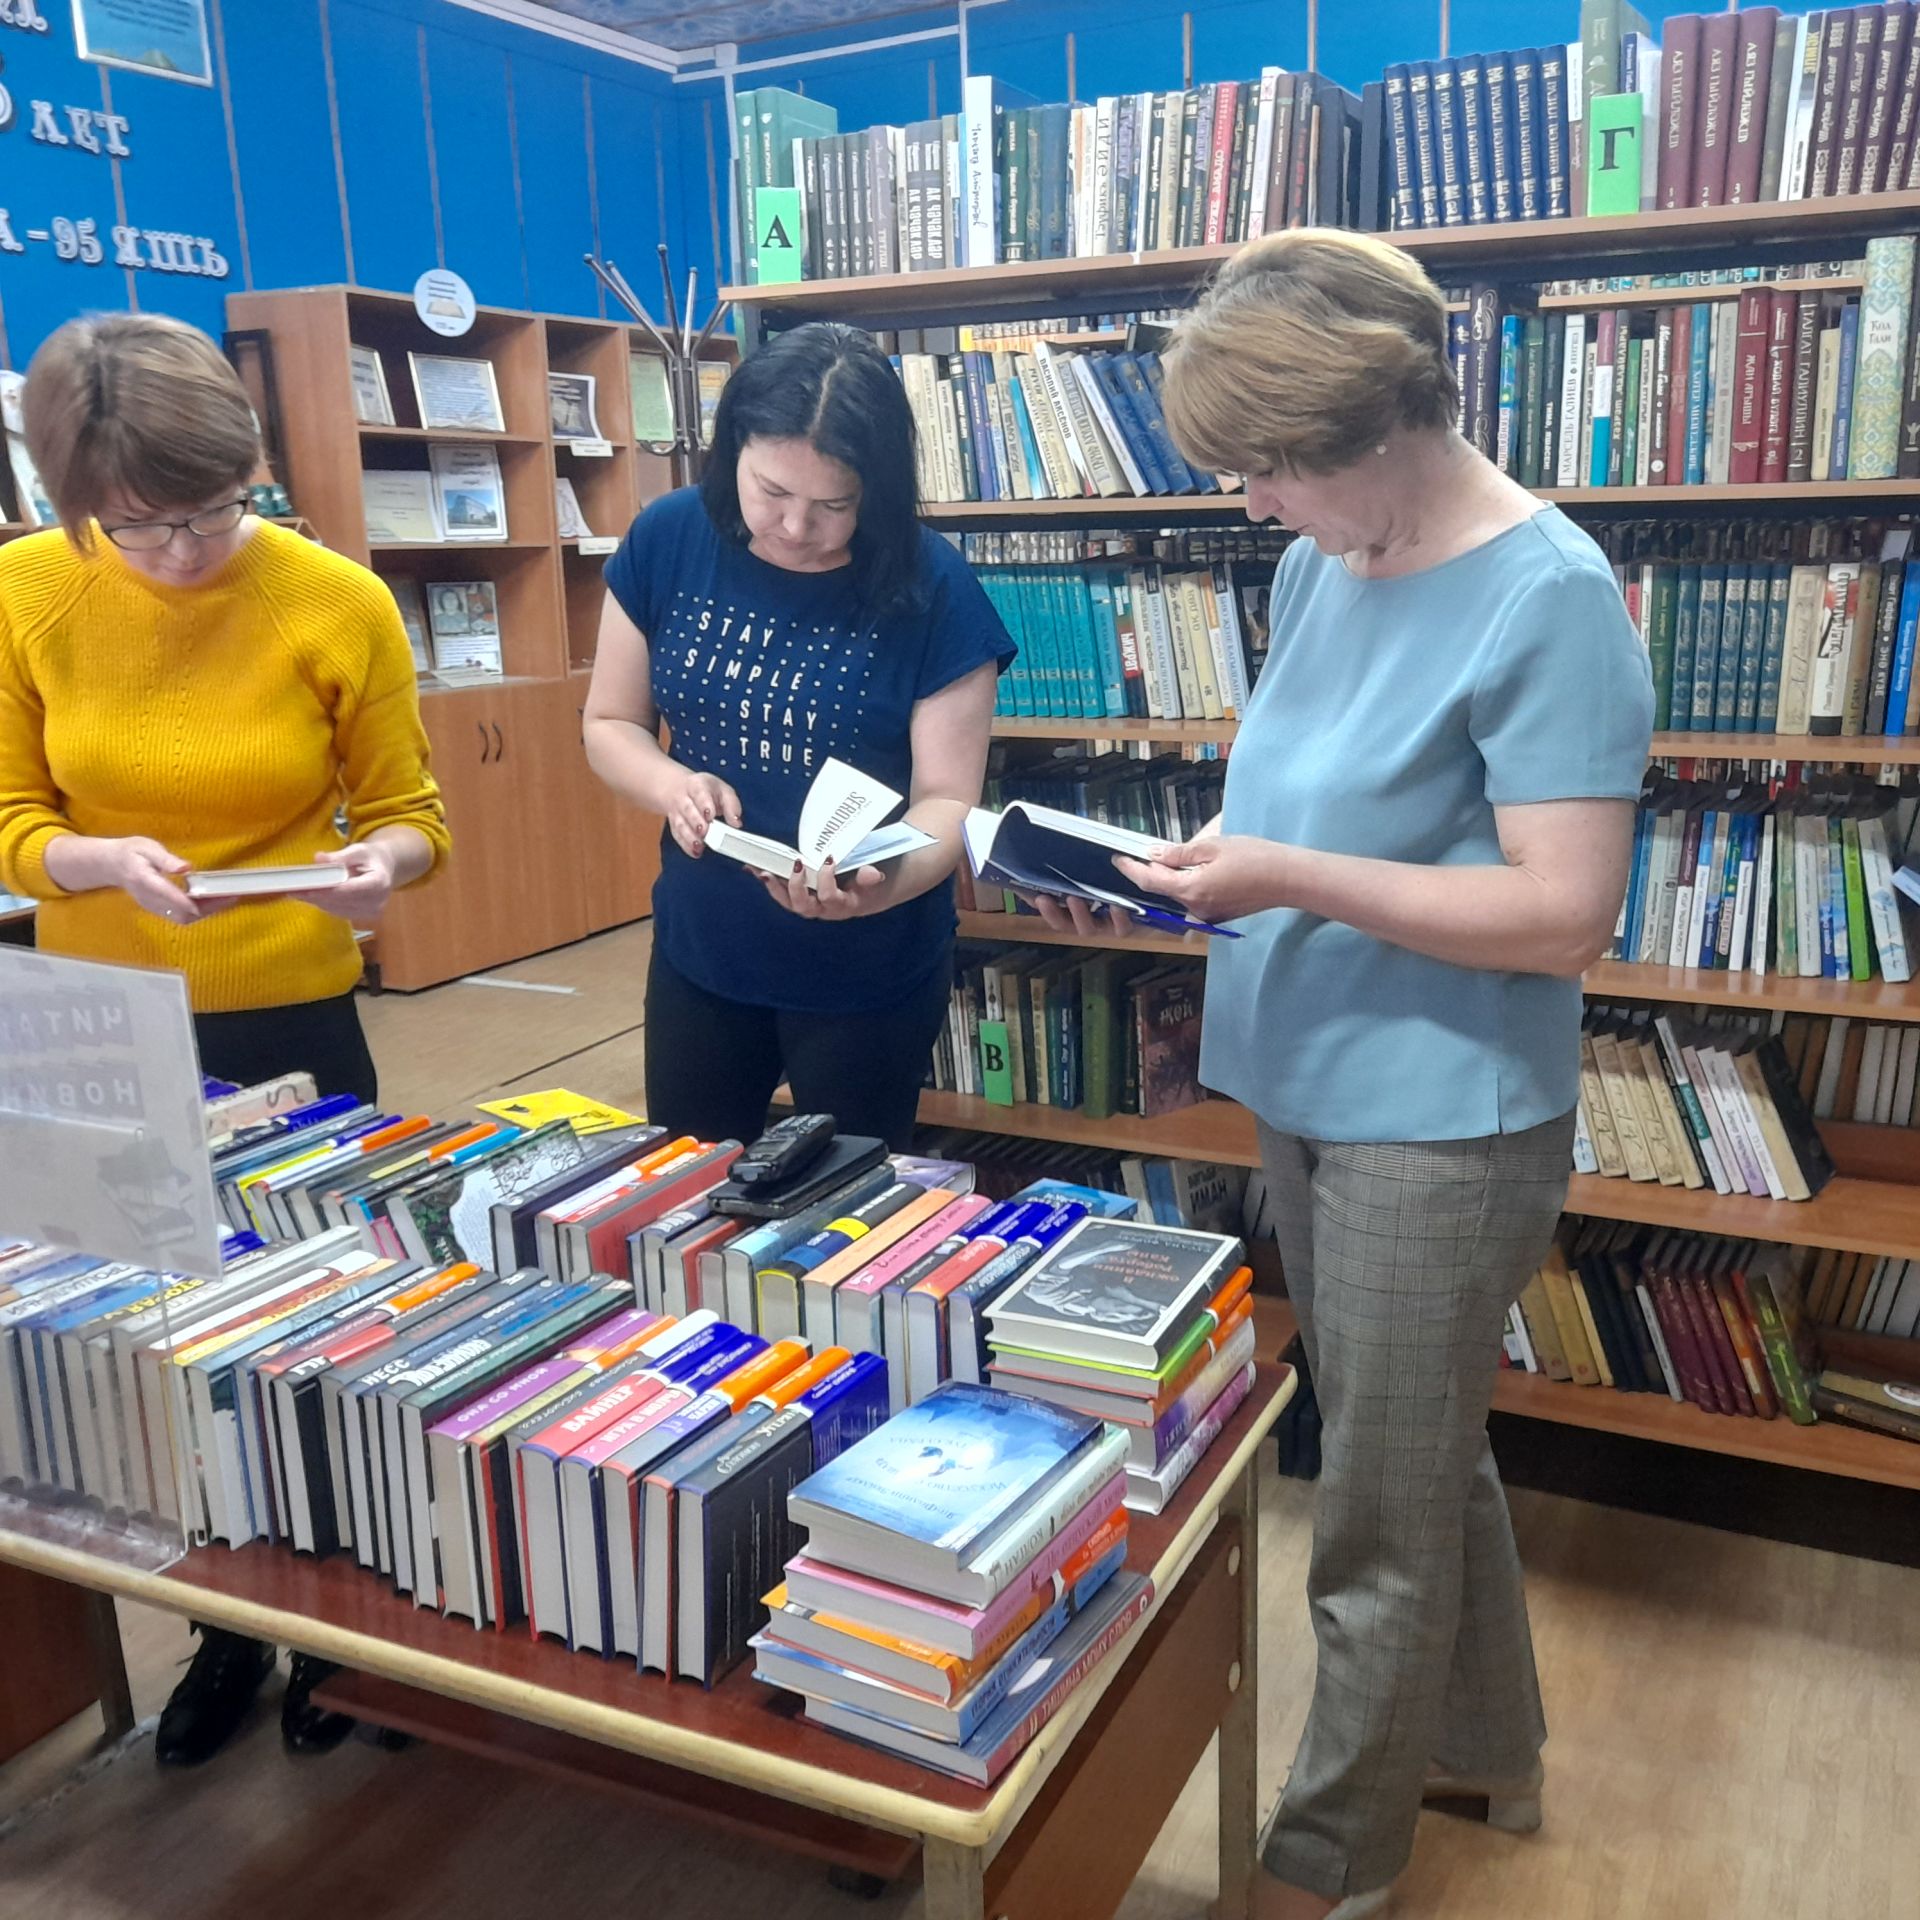 Более 300 экземпляров художественных и научно-популярных изданий поступили в Центральную библиотеку Лаишева